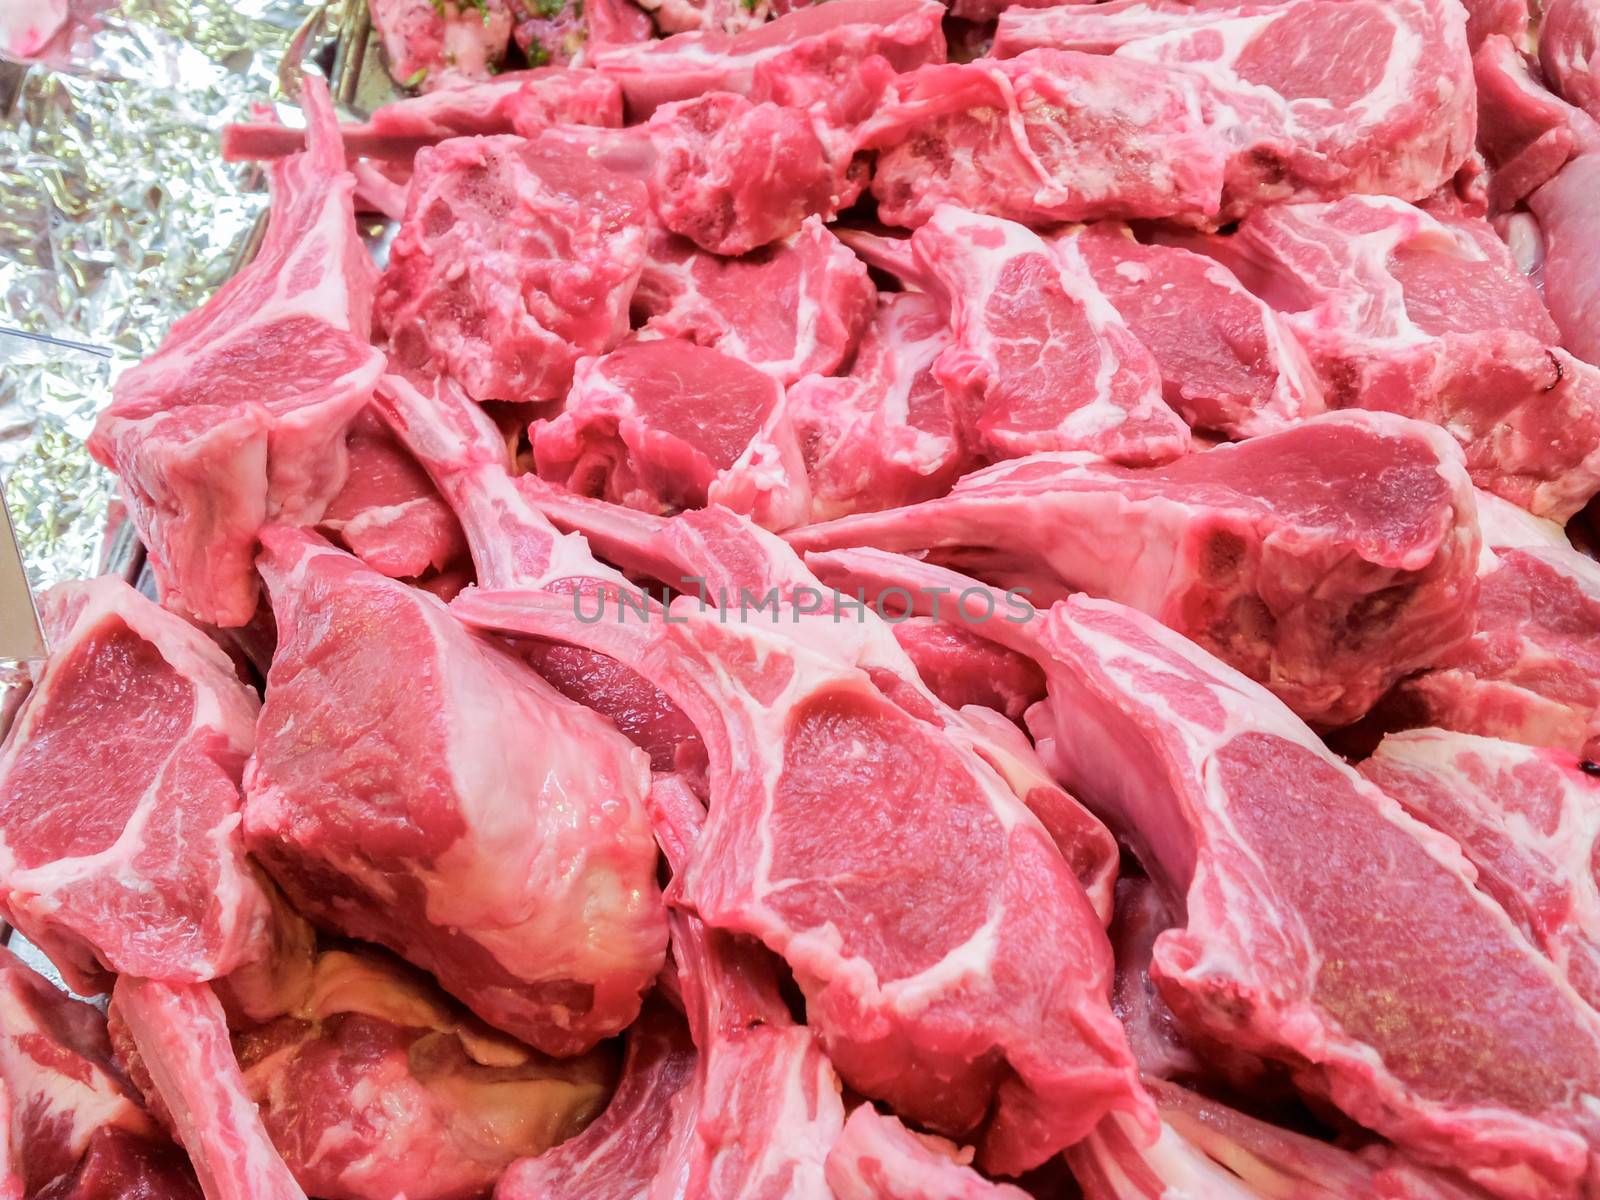 Lamb ribs by Arvebettum